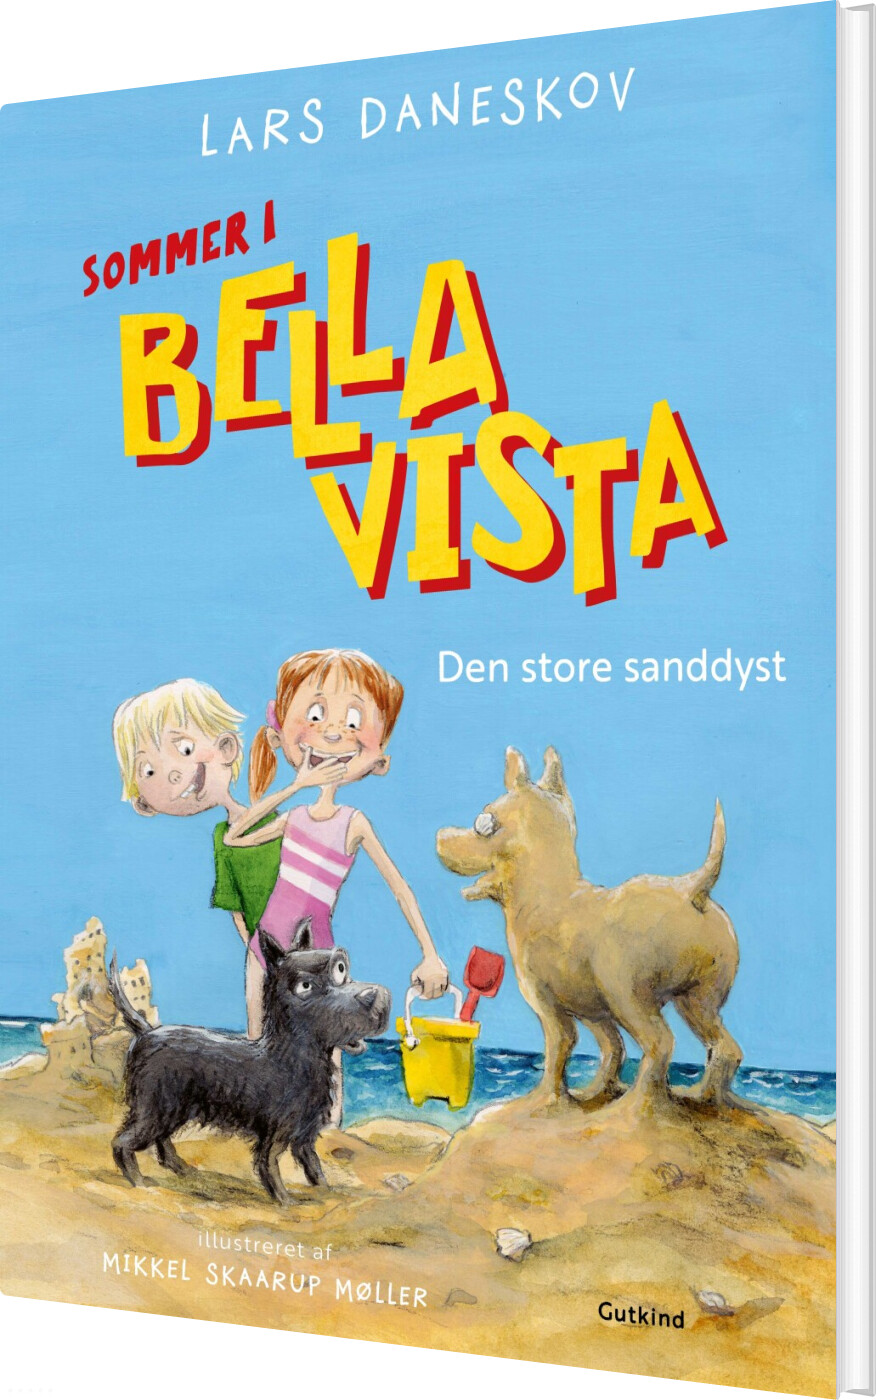 Billede af Bella Vista - Den Store Sanddyst - Lars Daneskov - Bog hos Gucca.dk